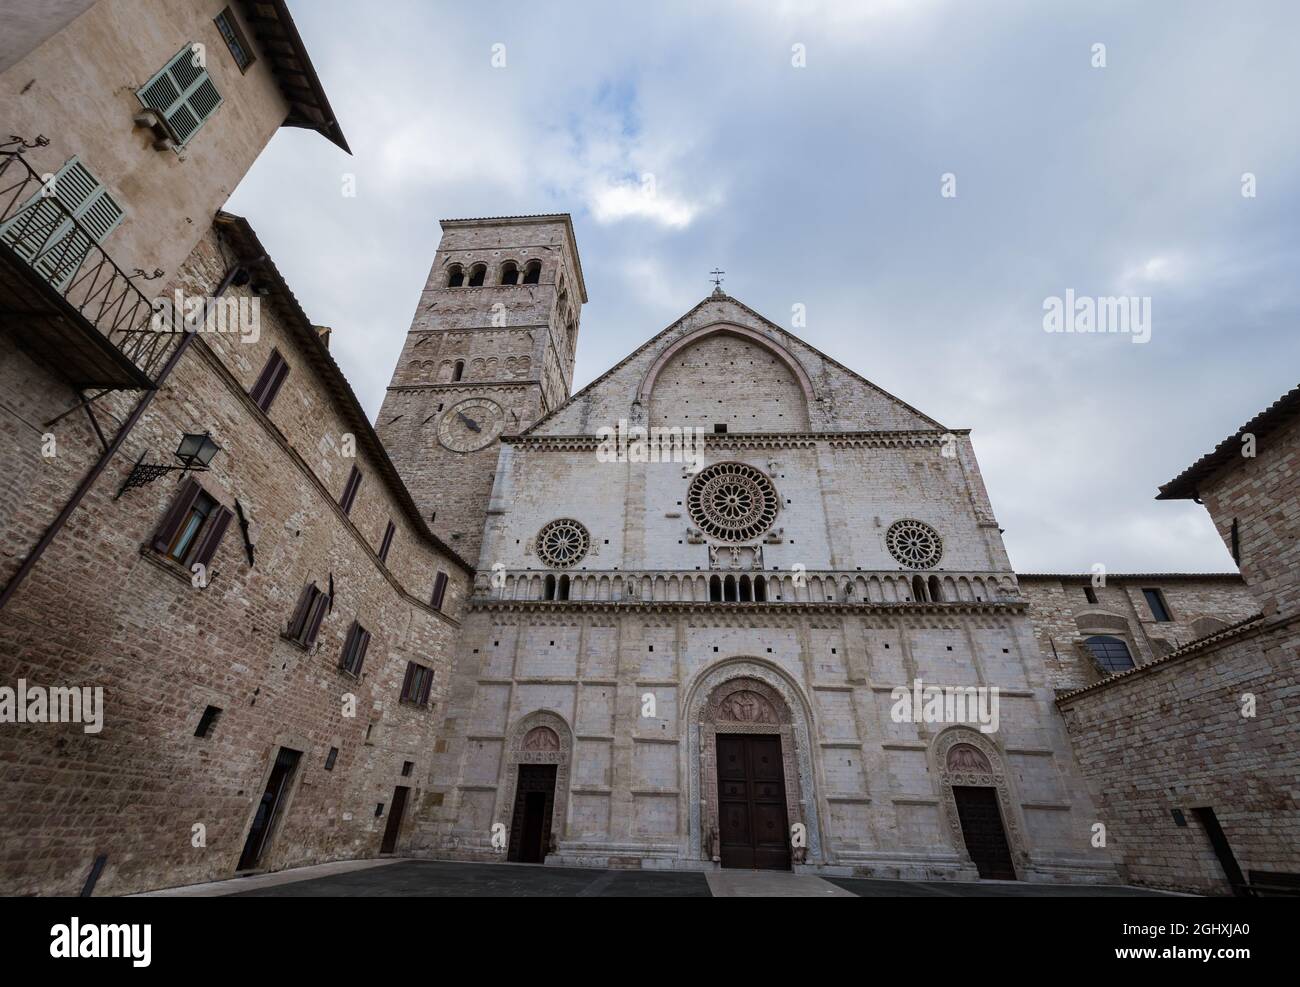 La cattedrale di San Rufino è il luogo principale di culto cattolico nella città di Assisi, la chiesa madre della diocesi di Assisi-Nocera Umbra-Guald Foto Stock